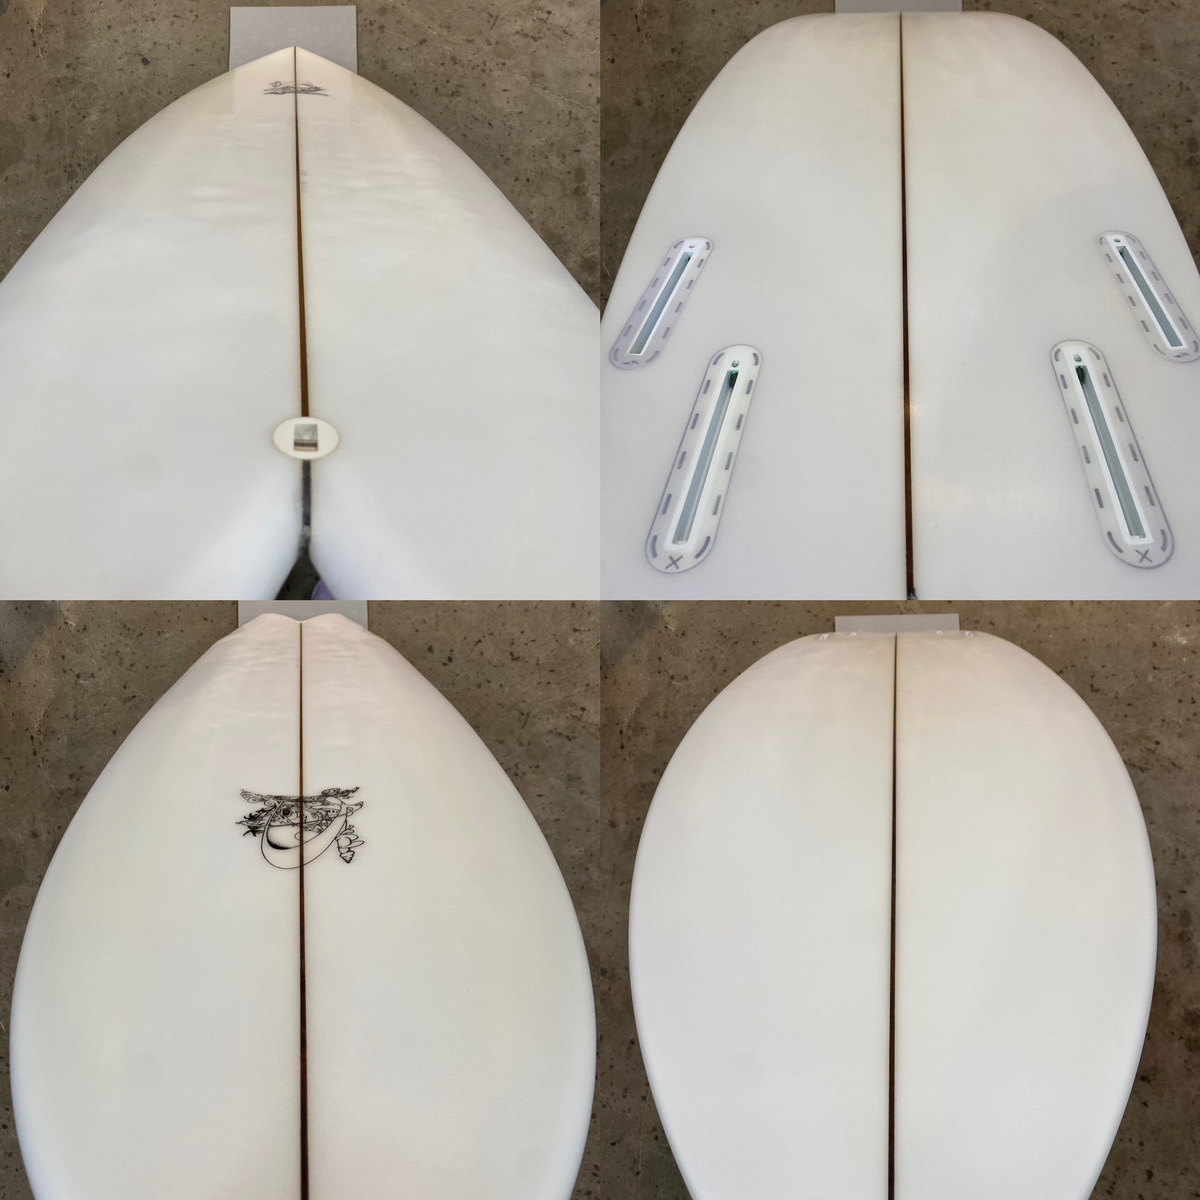 RAINBOW / QUAN 5`11 | USED SURF×SURF MARKET